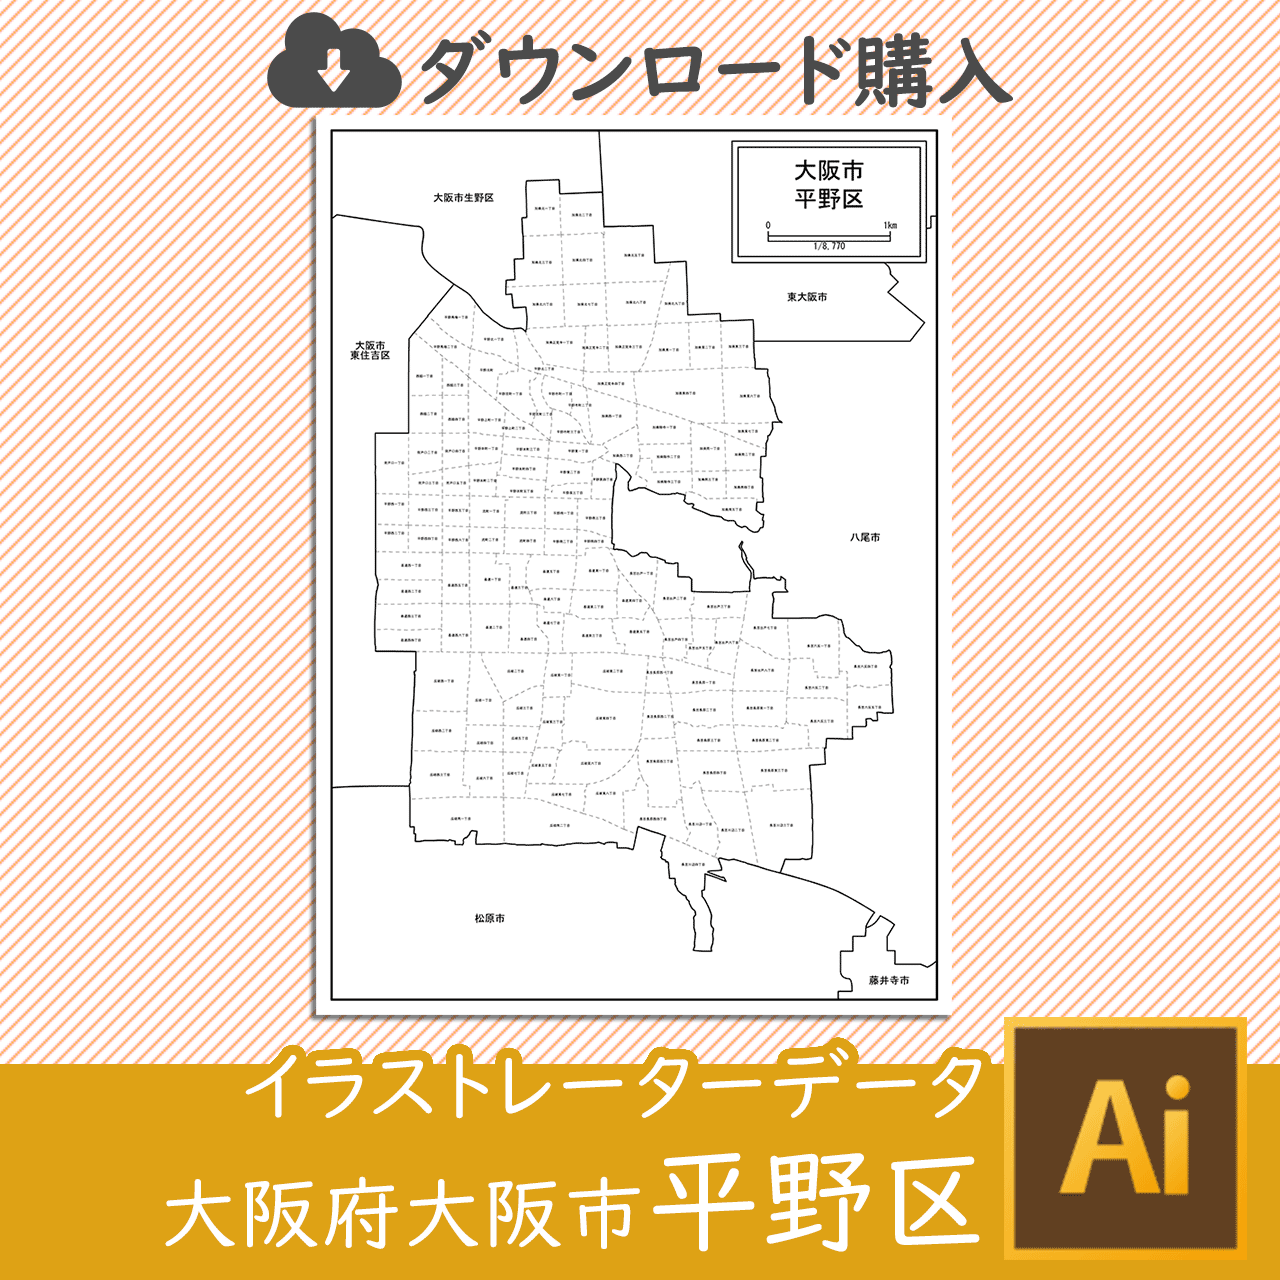 大阪市平野区の白地図のサムネイル画像